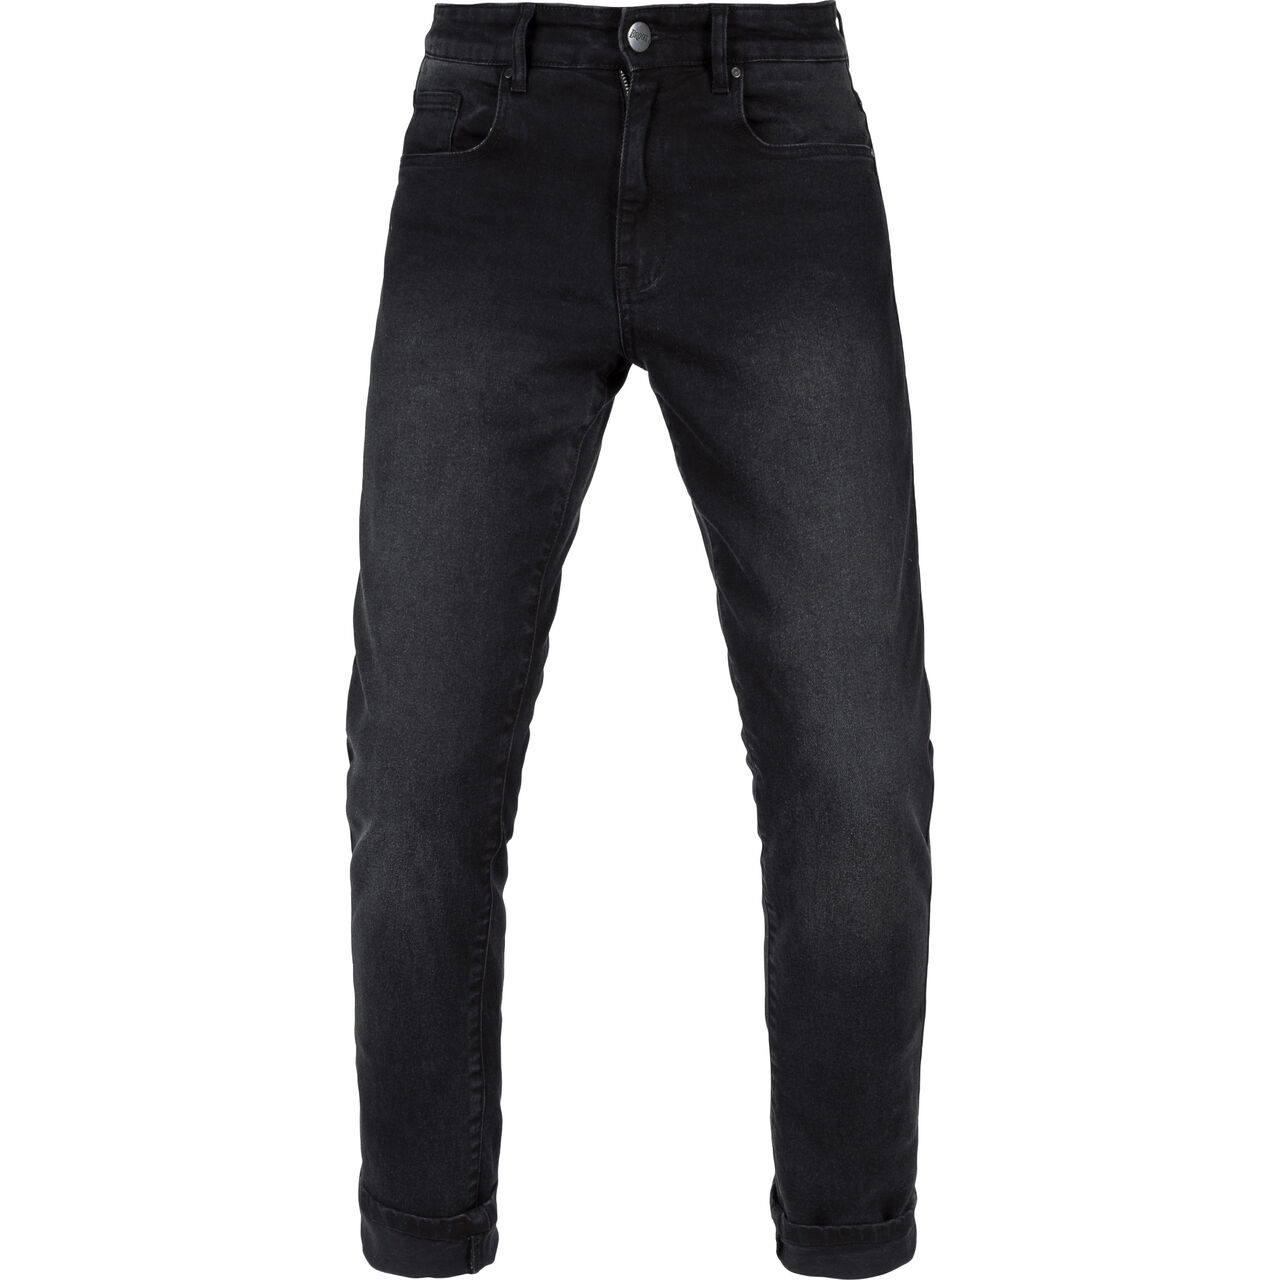 California Ladies jeans black 28/30